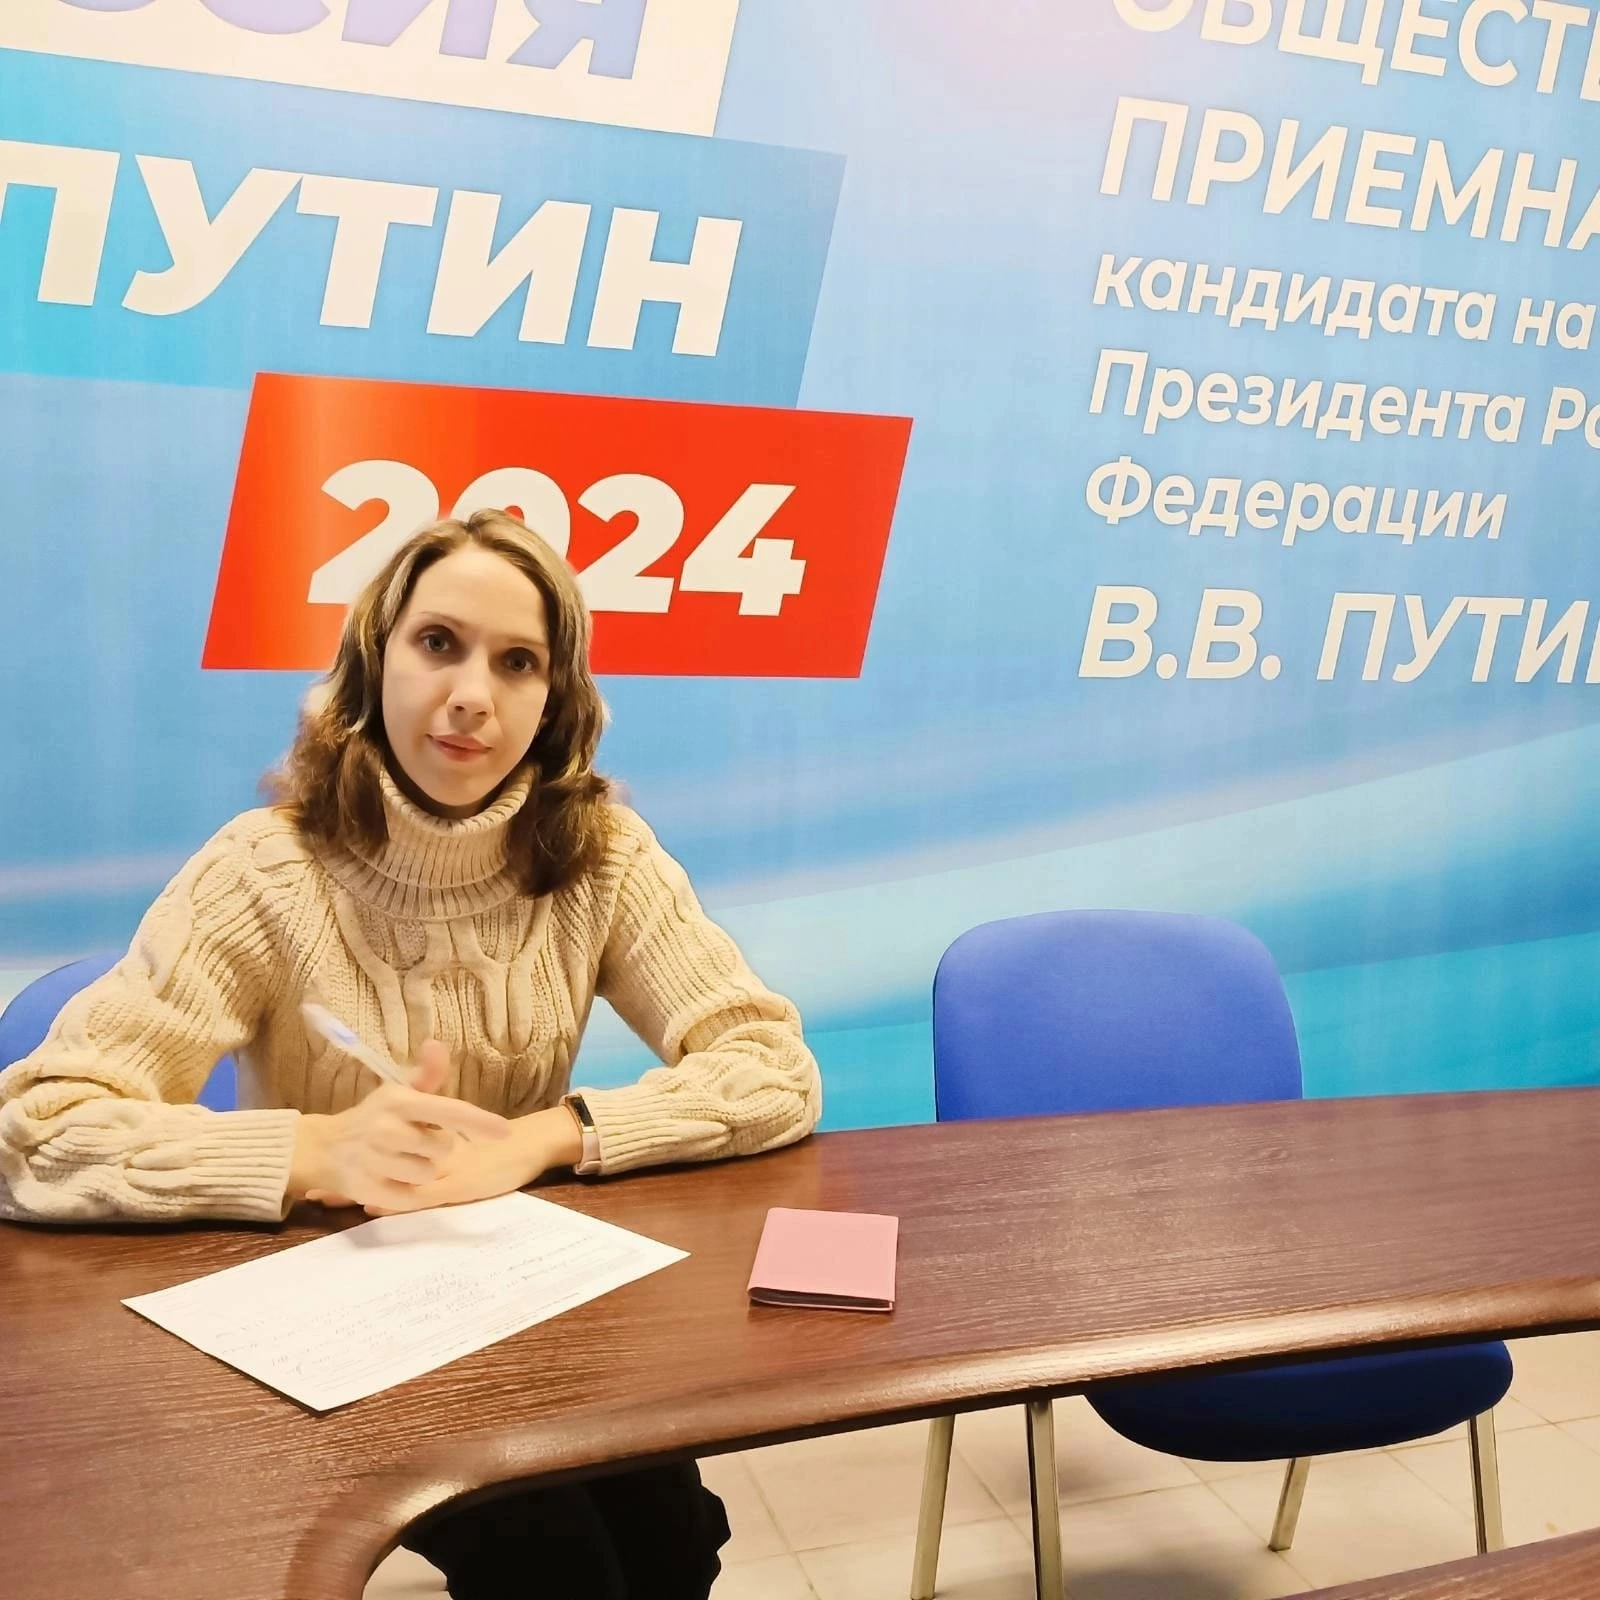 Активисты Владимирской областной организации ВОИ  приняли участие в сборе подписей за выдвижение В.В. Путина в Президенты России.